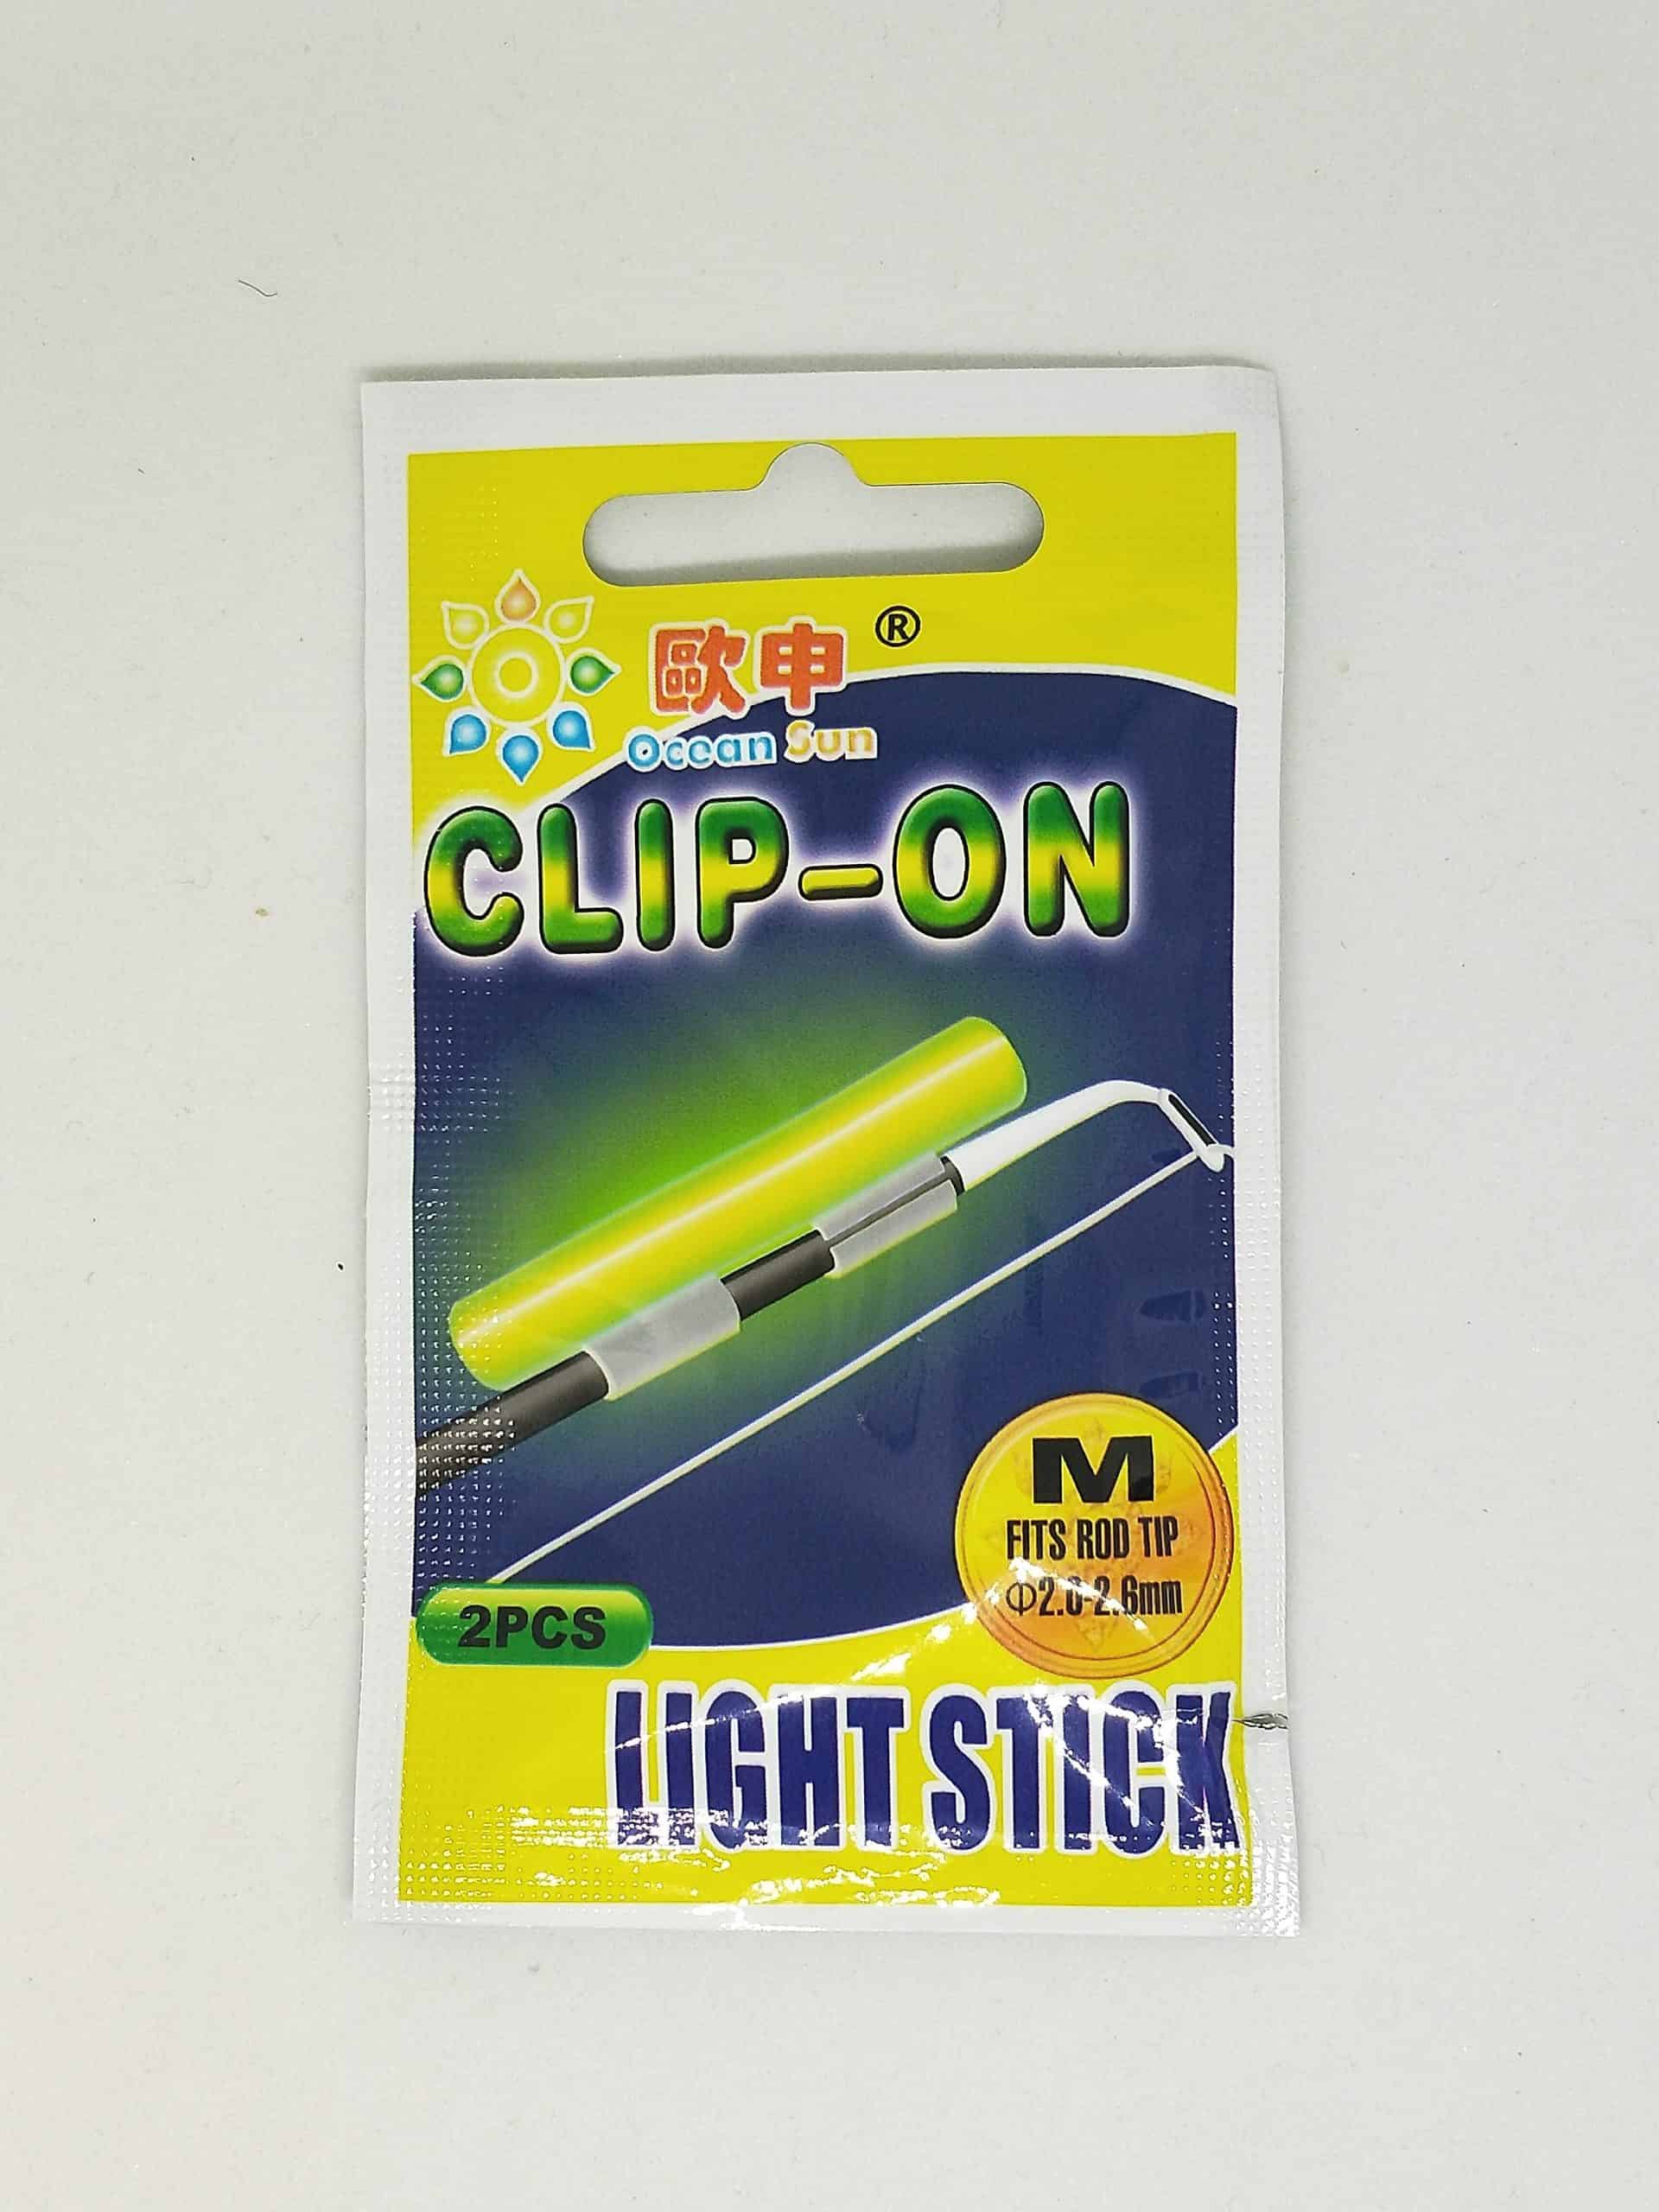 20pcs Fishing Glow Sticks - Size M